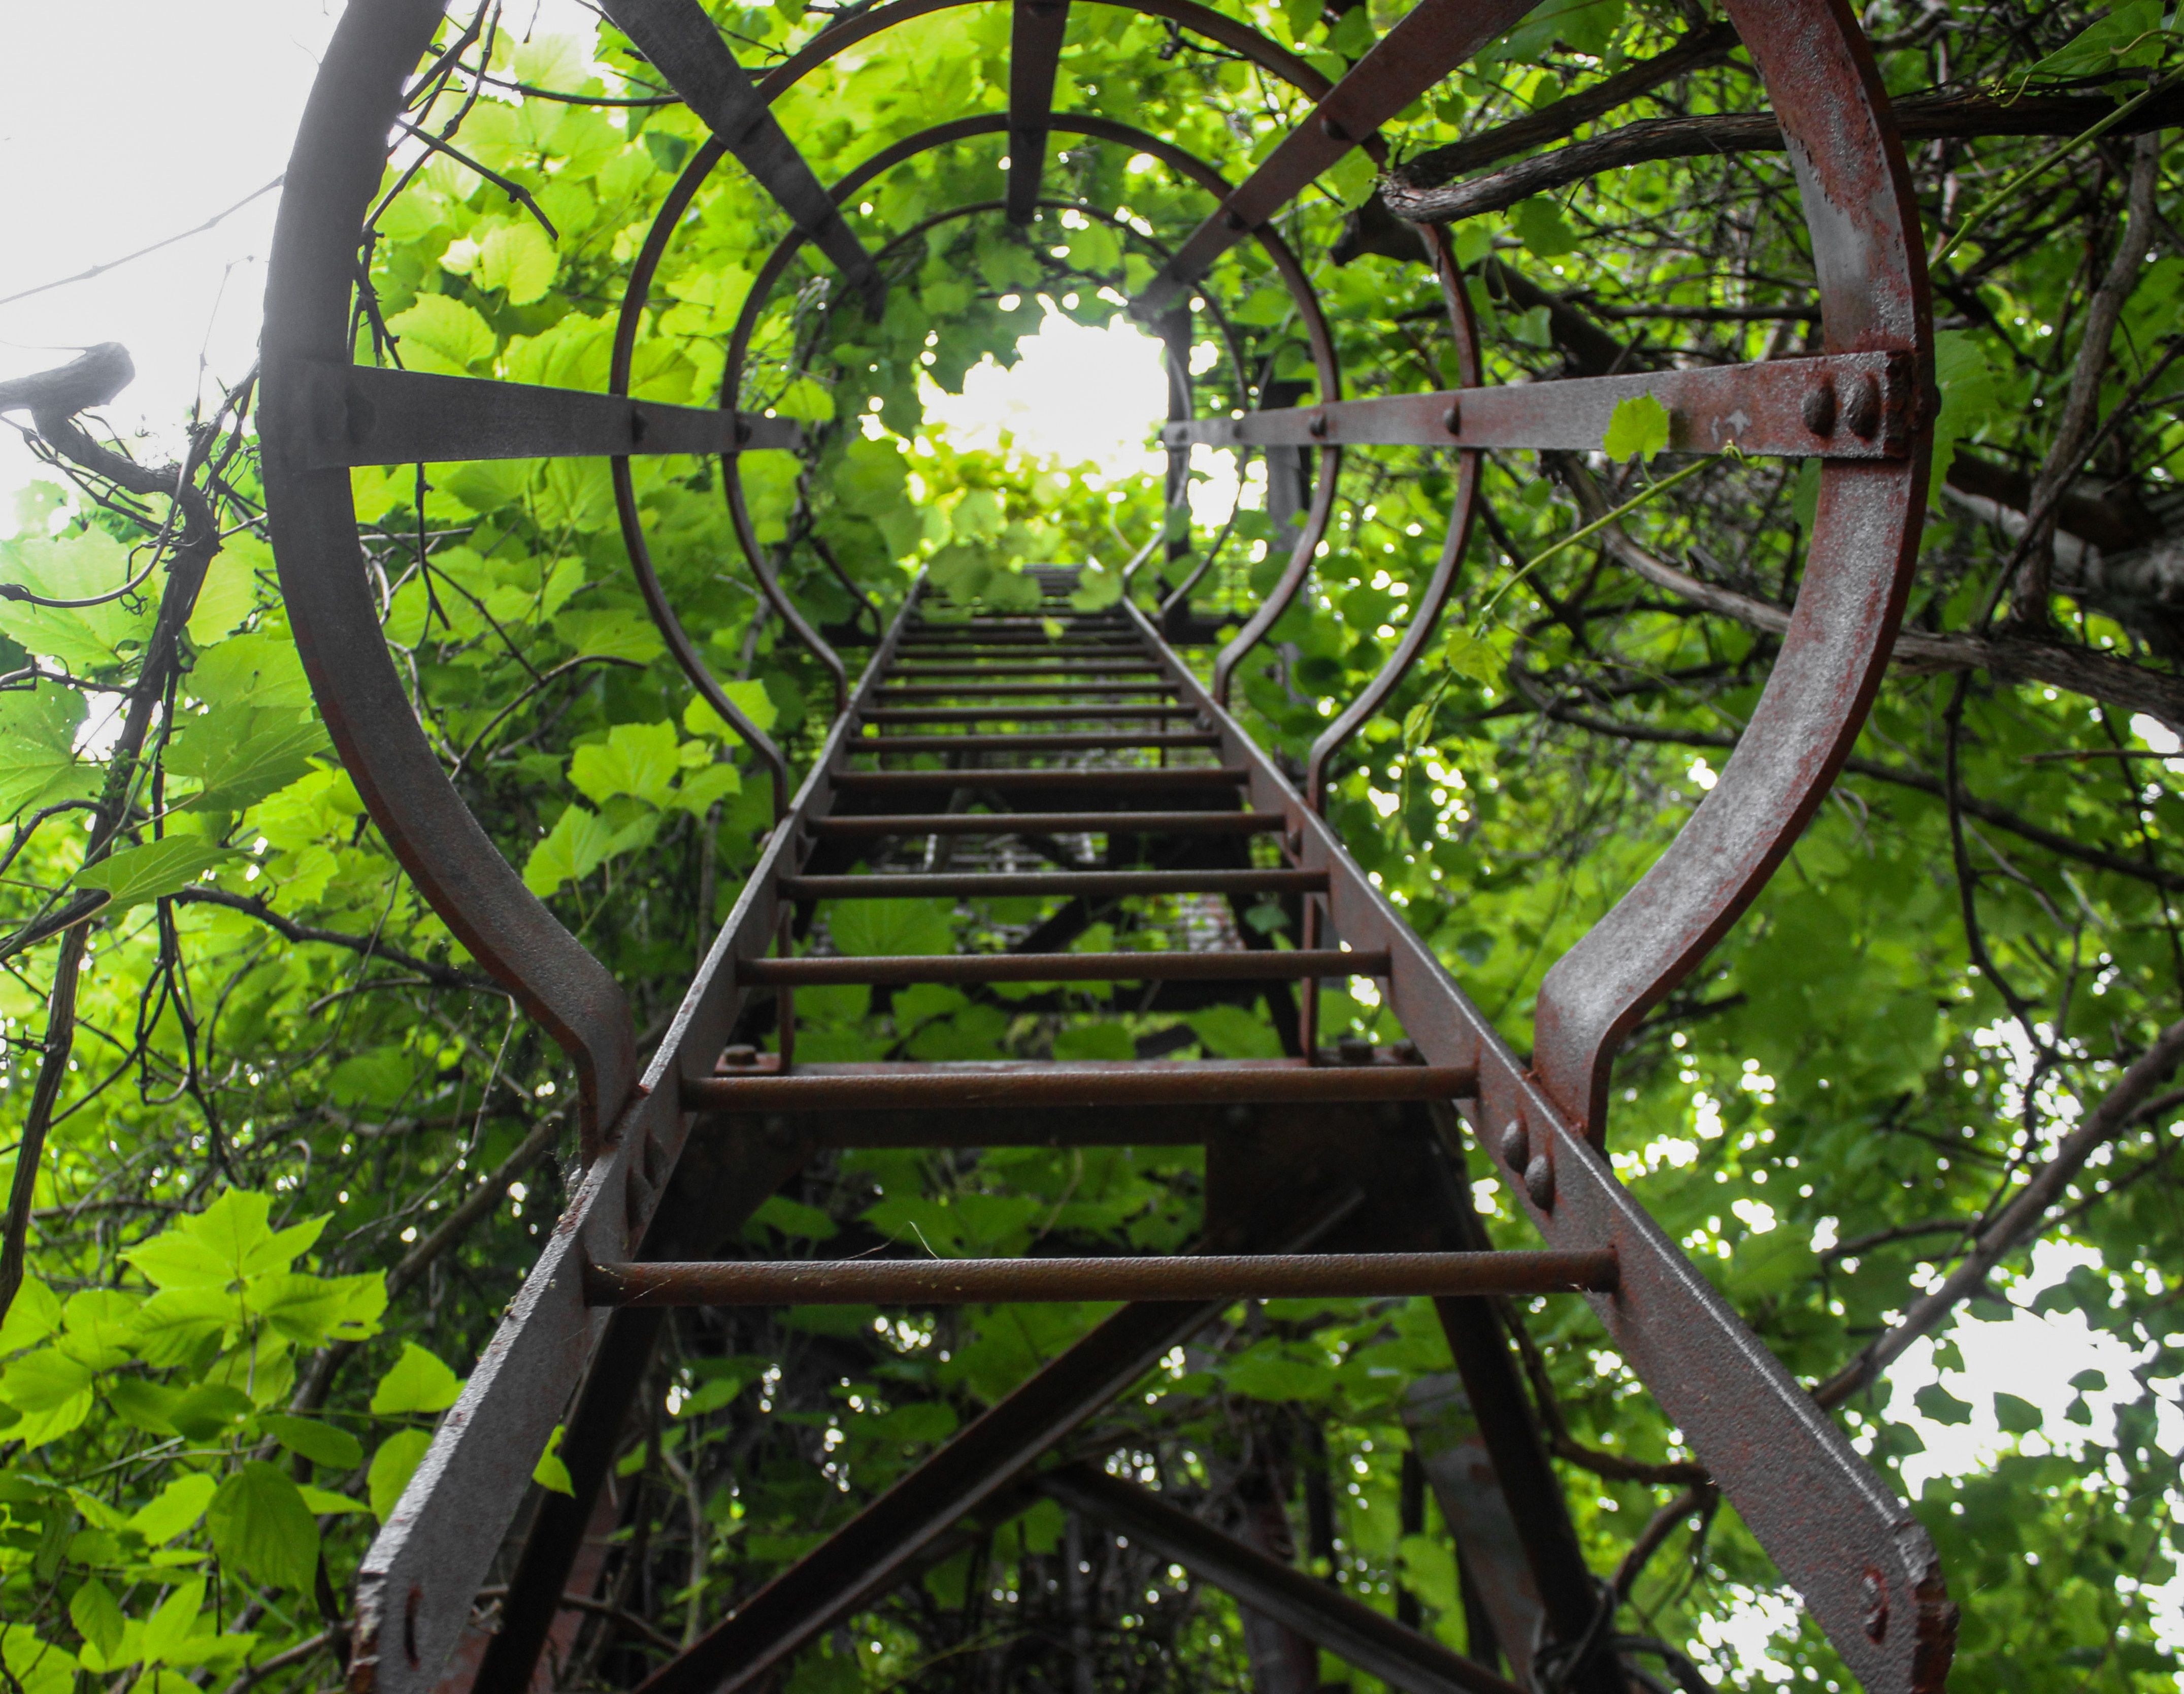 black metal ladder beside green leaf trees during daytime